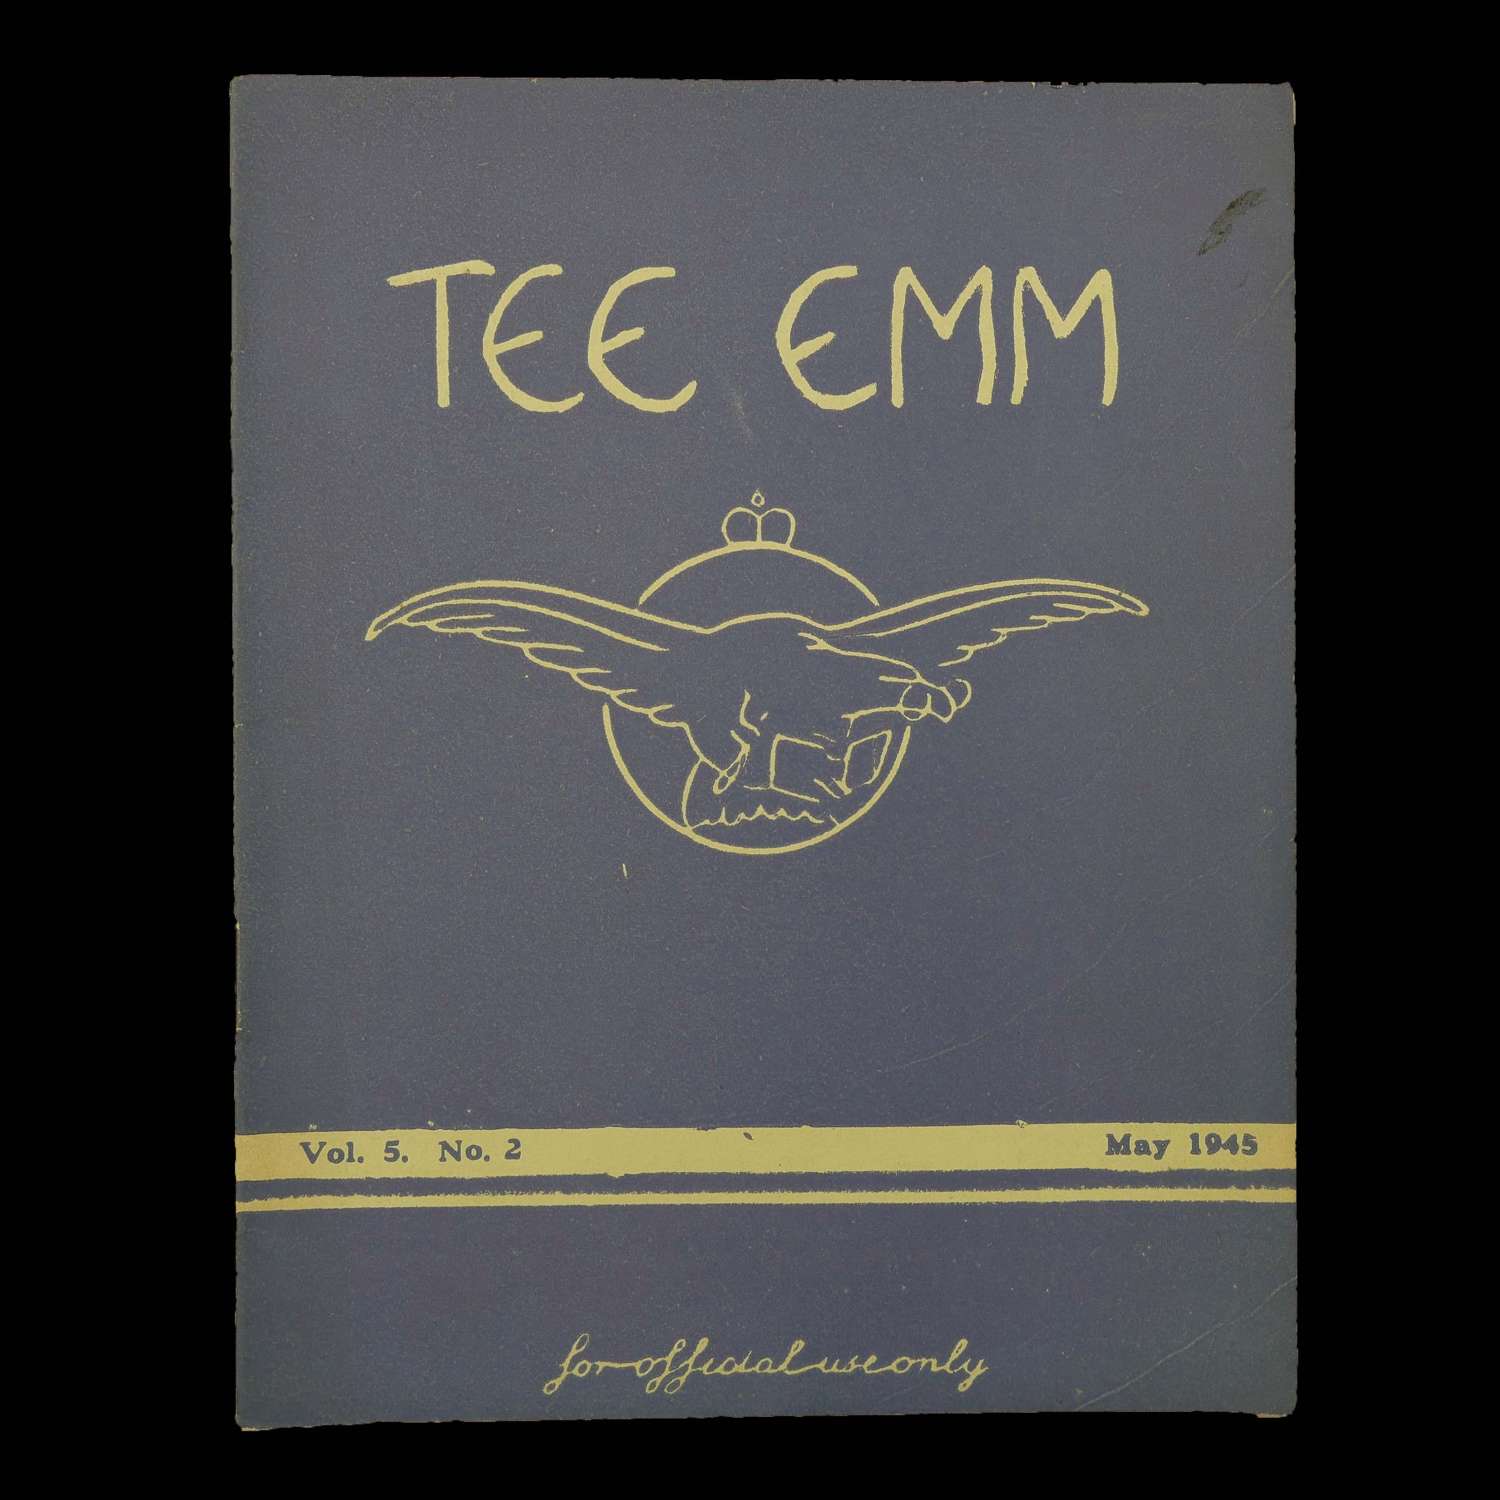 Tee Emm, May 1945